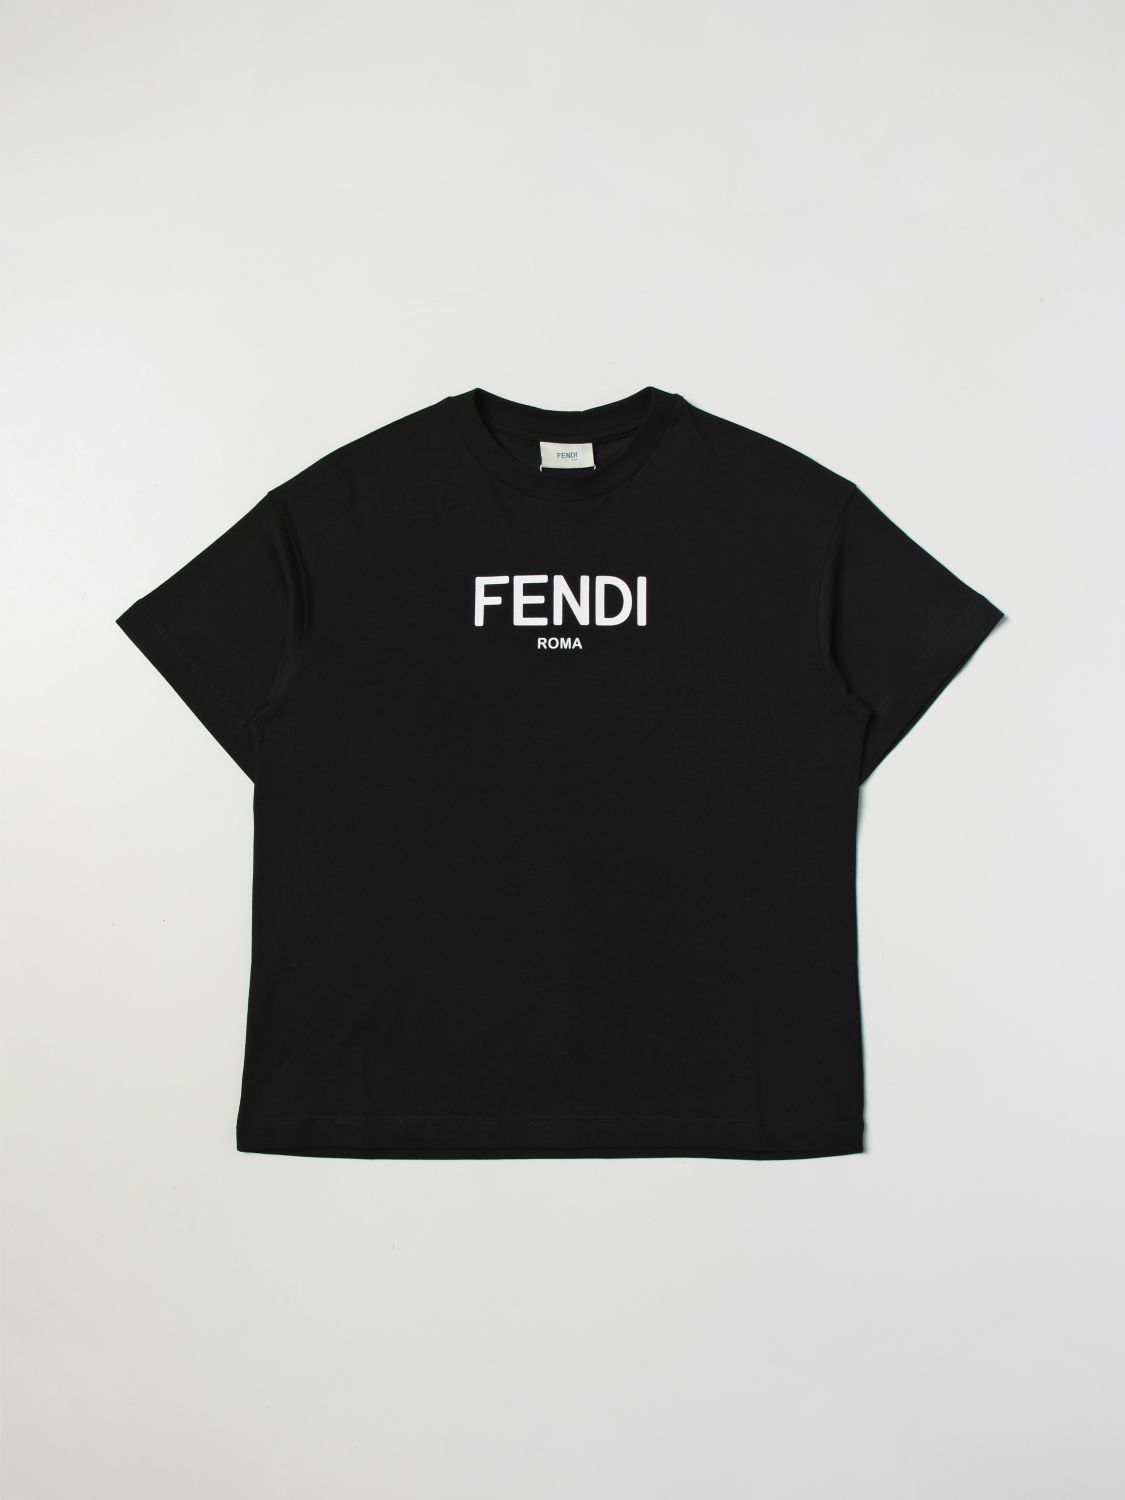 FENDI KIDS: t-shirt for boys - Black | Fendi Kids t-shirt JUI1377AJ ...